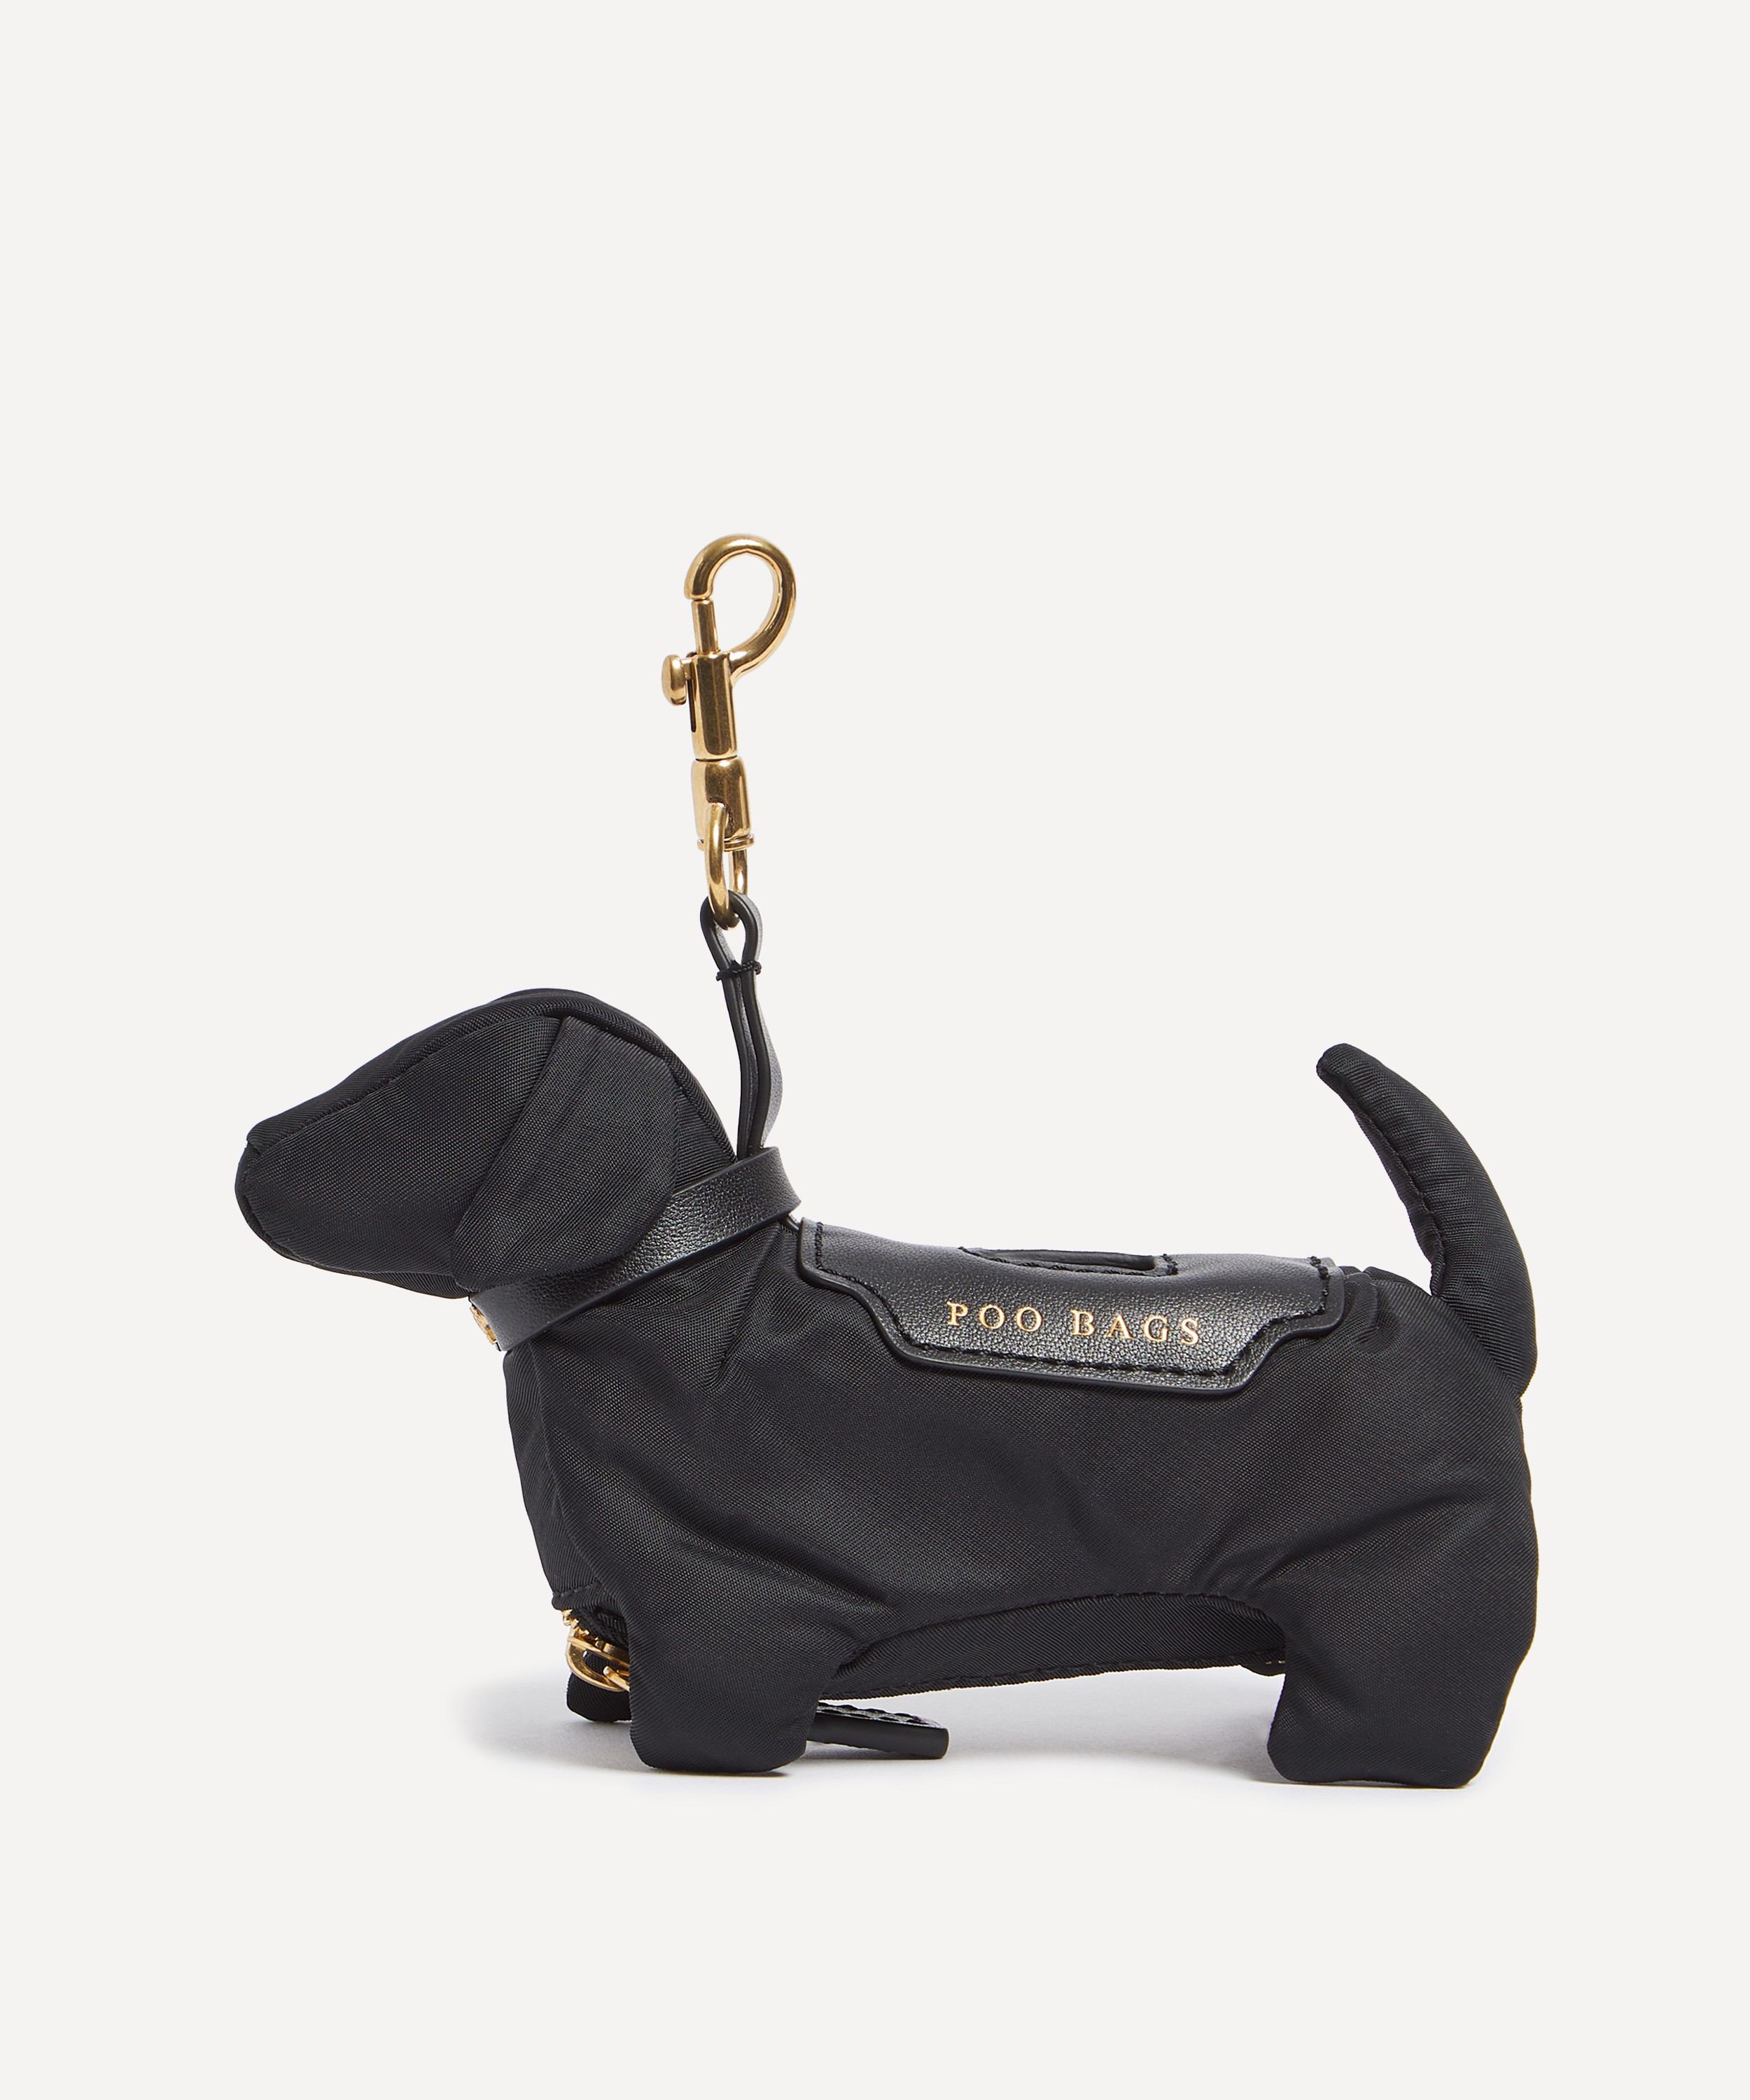 Buy Anya Hindmarch Dog Poo Bag Charm Metal, Taupe Color Women